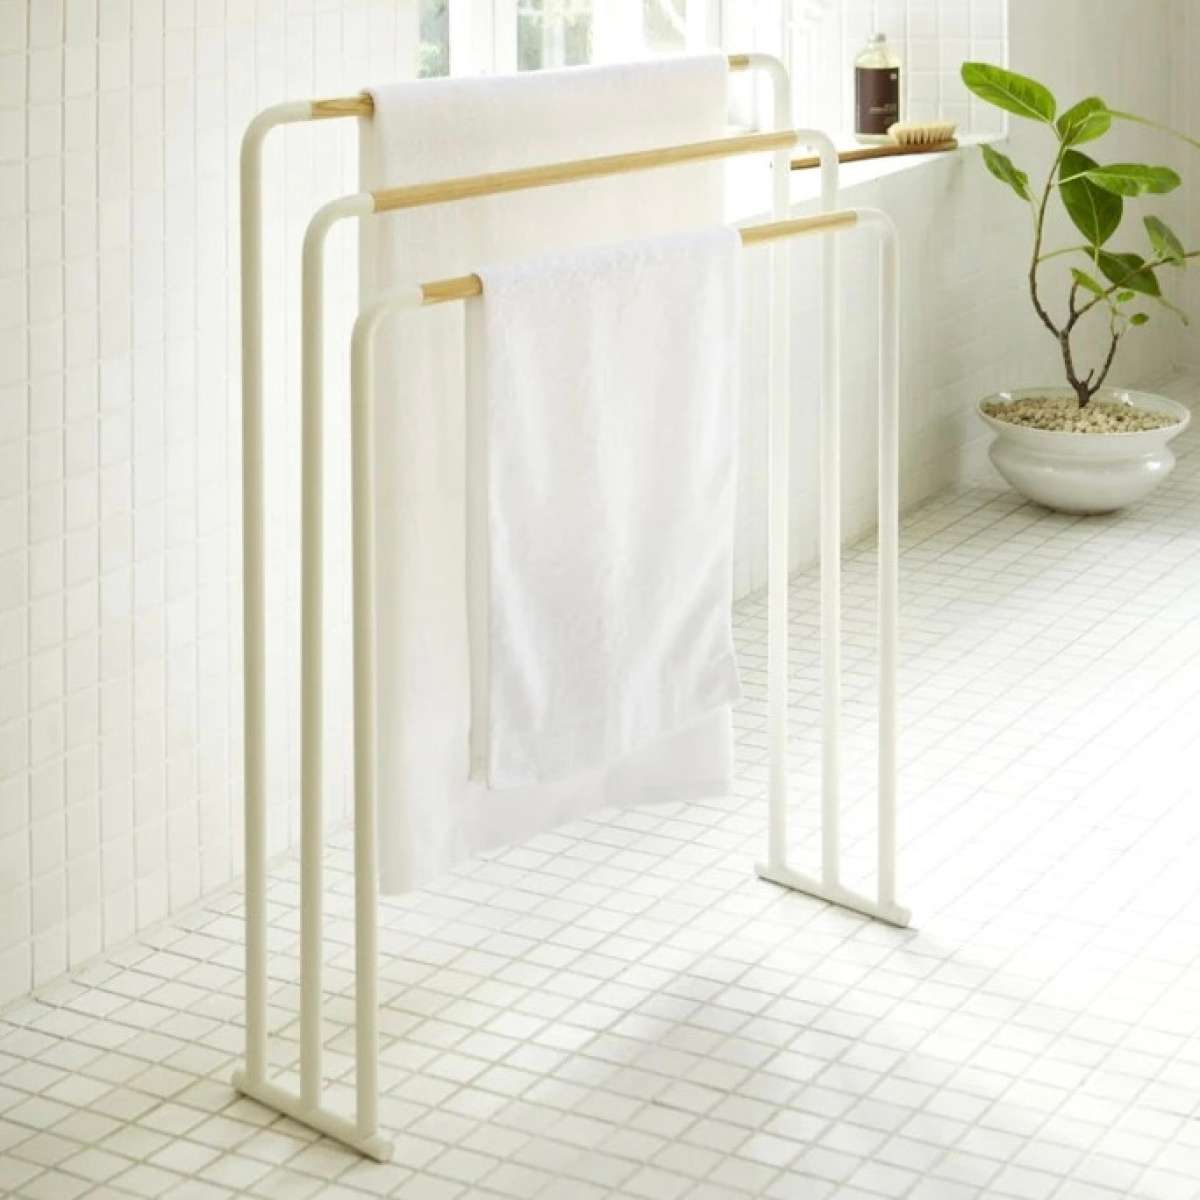 Immagine del prodotto Poggia Asciugamani in Metallo Bianco e Legno | Yamazaki